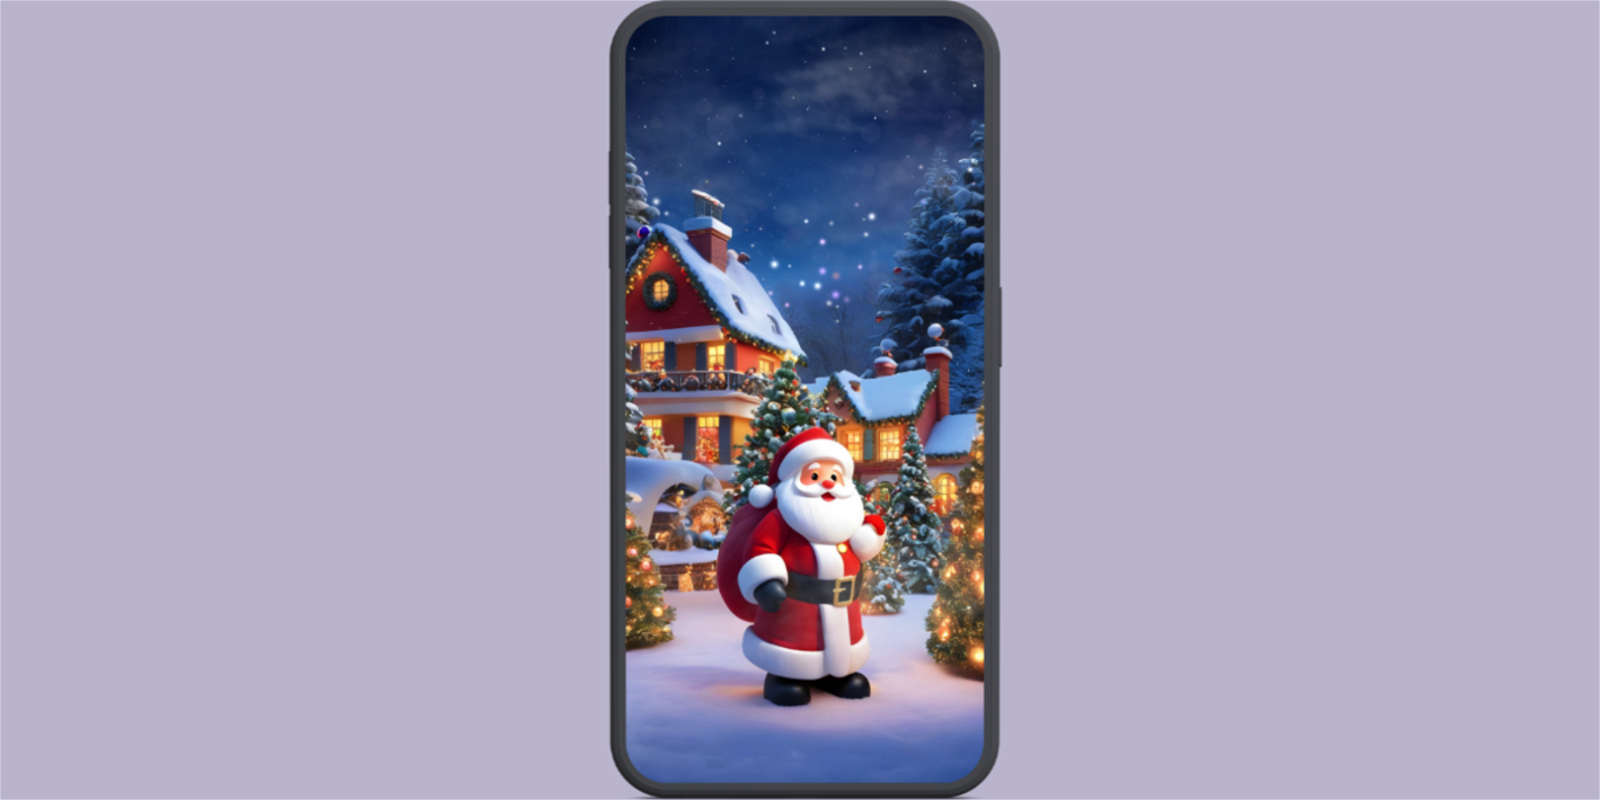 Pantalla de móvil con un fondo de pantalla de Papá Noel y una casa decorada con luces